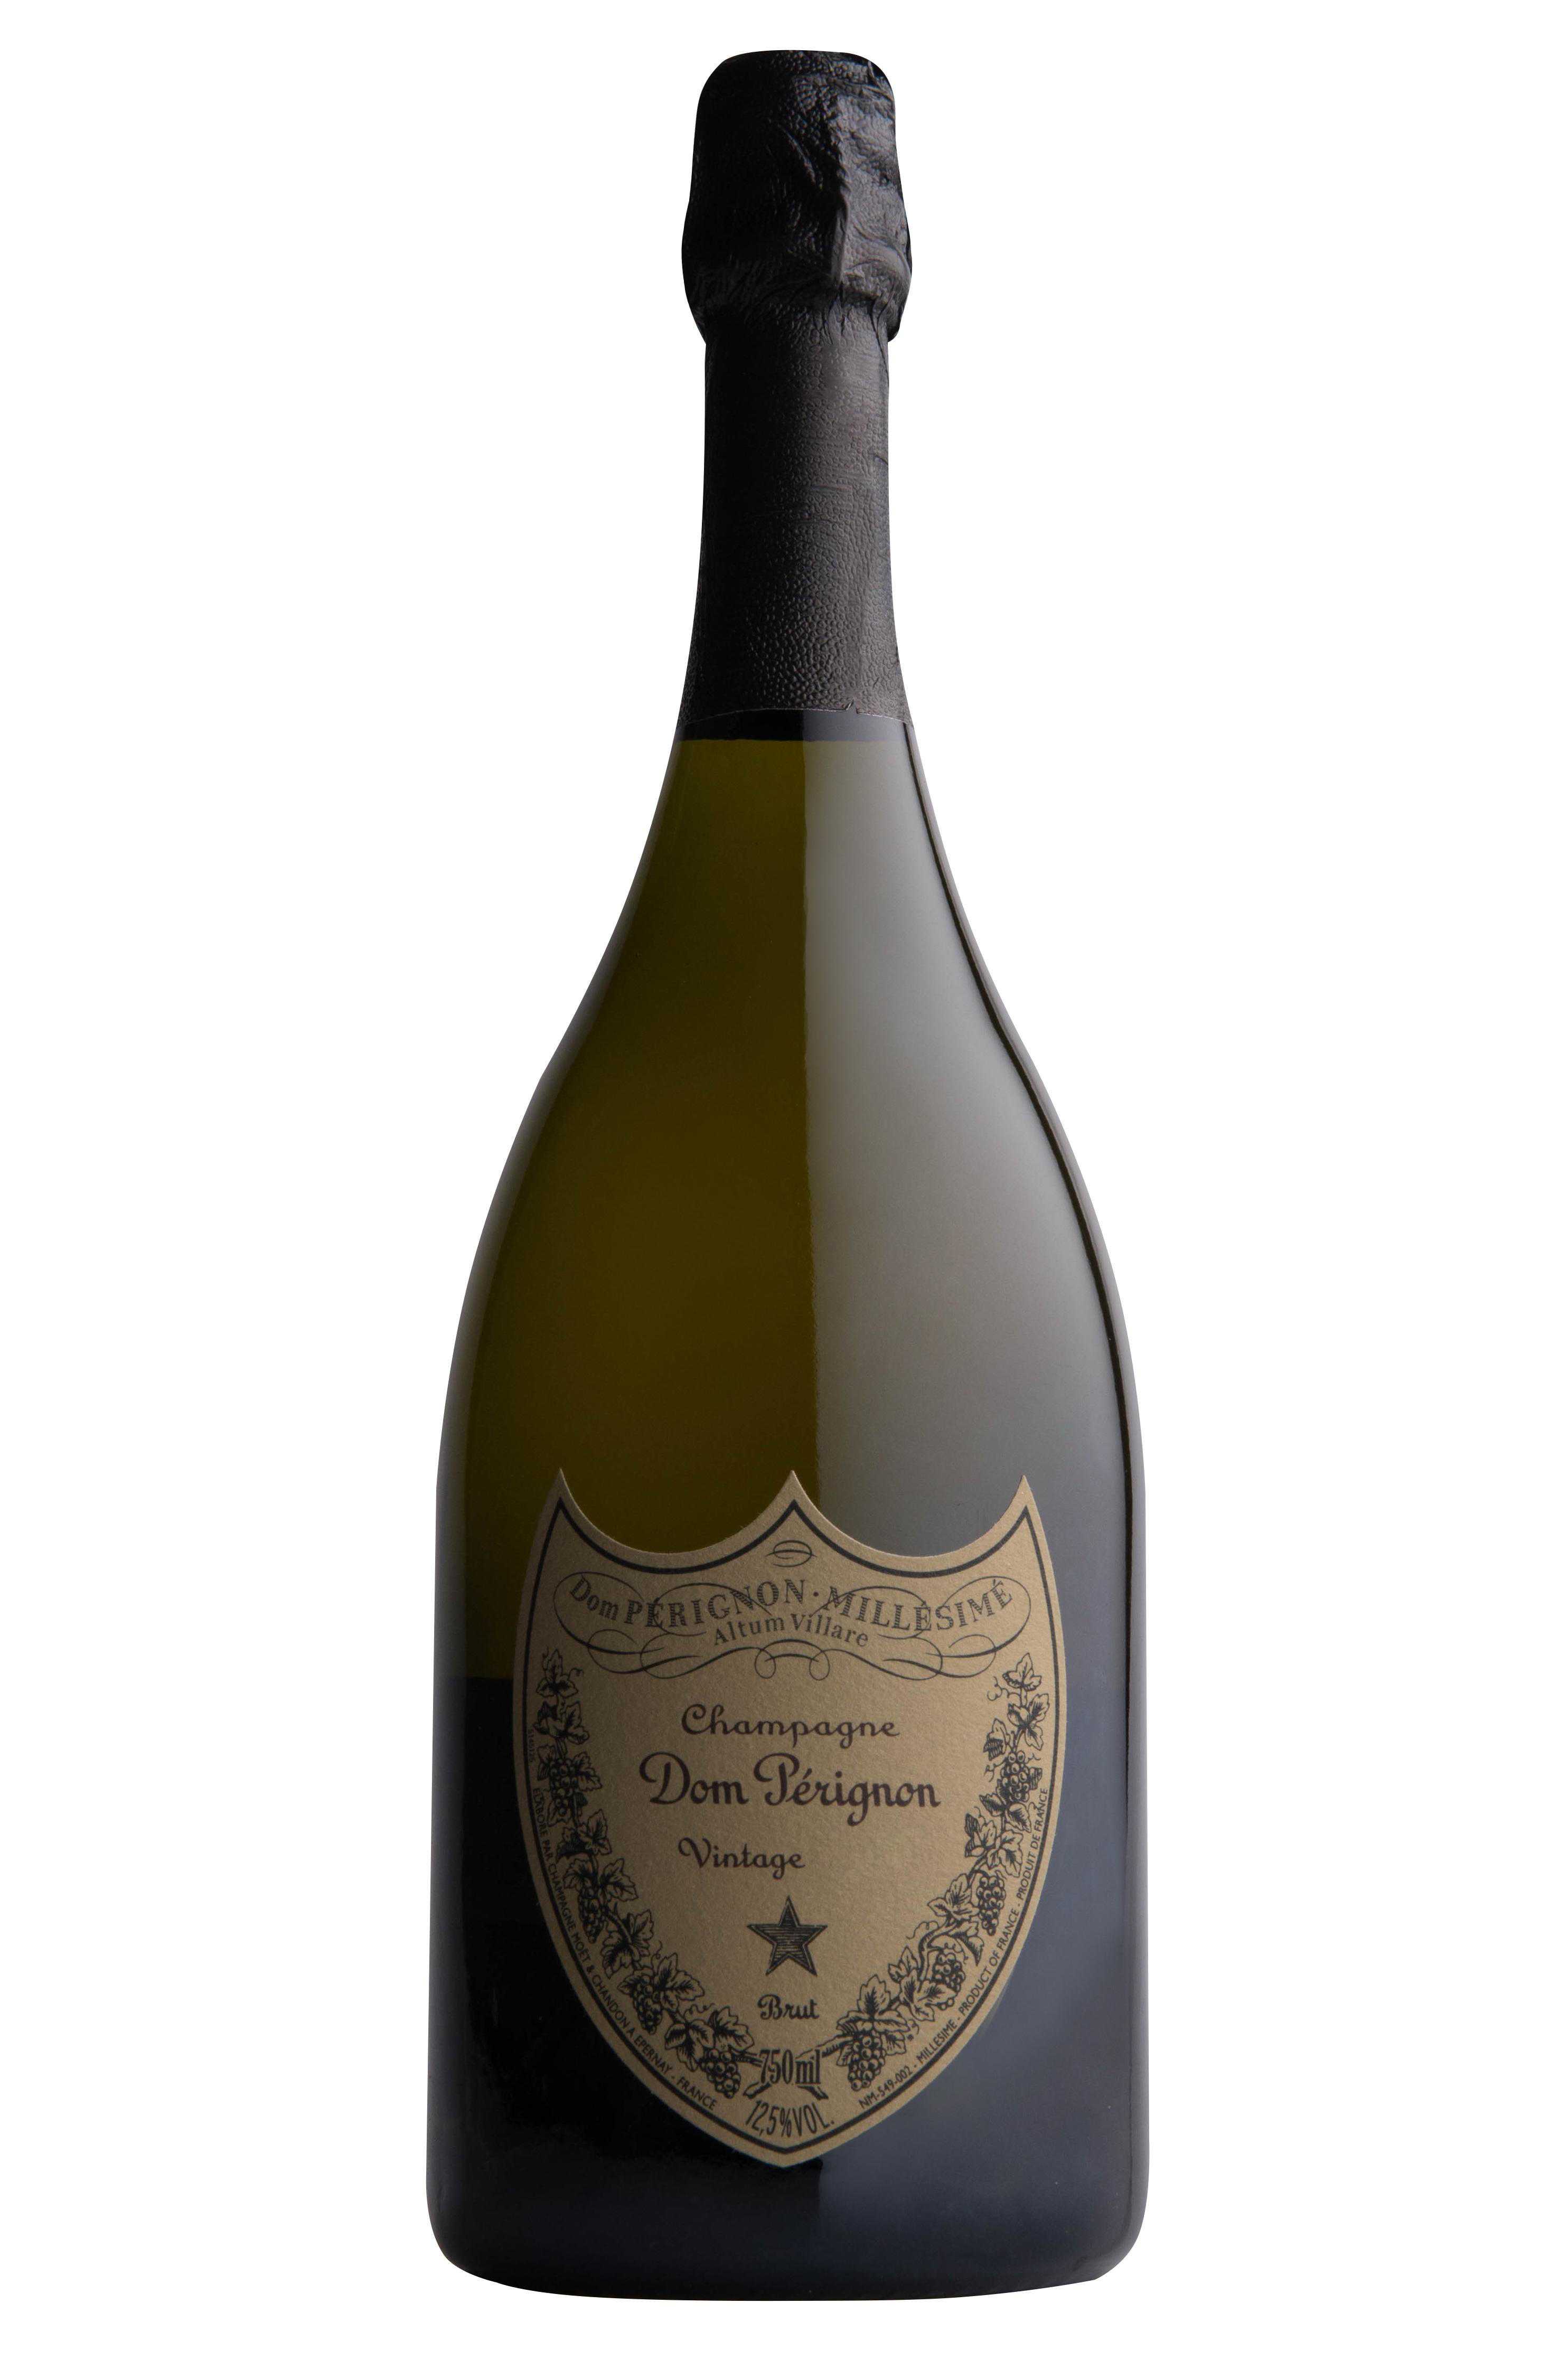 Вино просекко — символ италии и достойная замена шампанскому